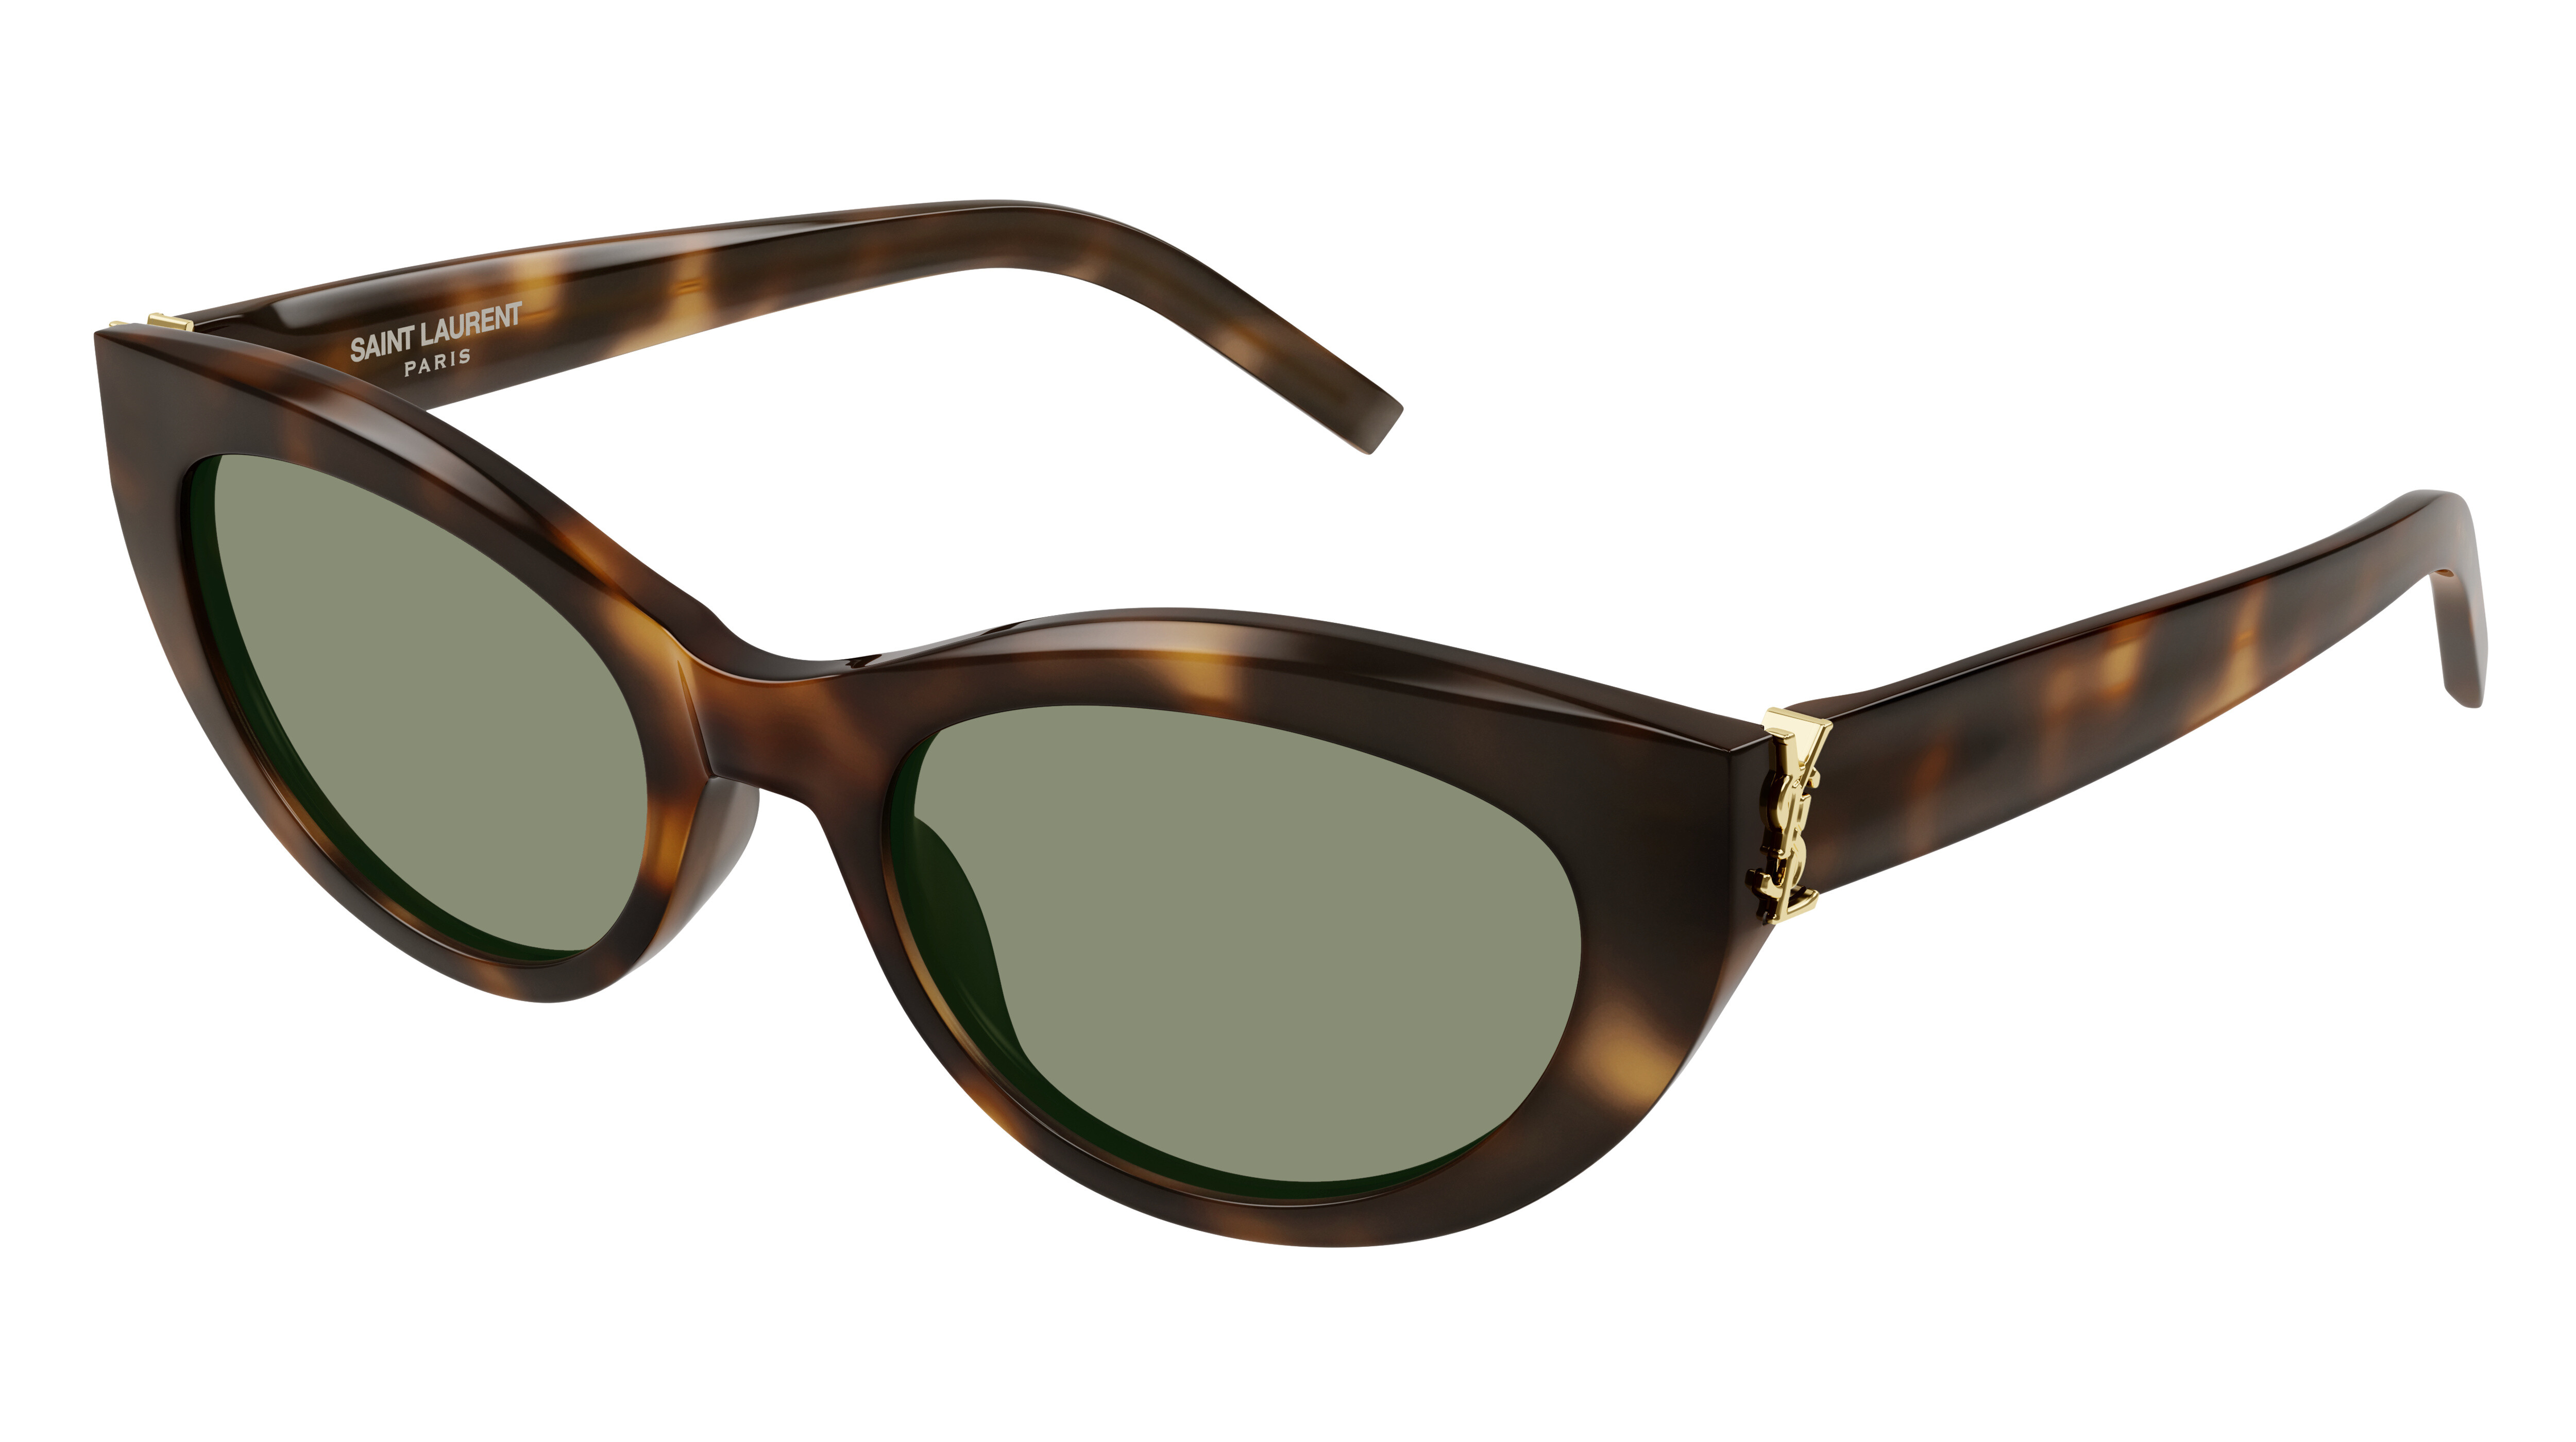 [products.image.front] Saint Laurent SL M115 003 Sonnenbrille